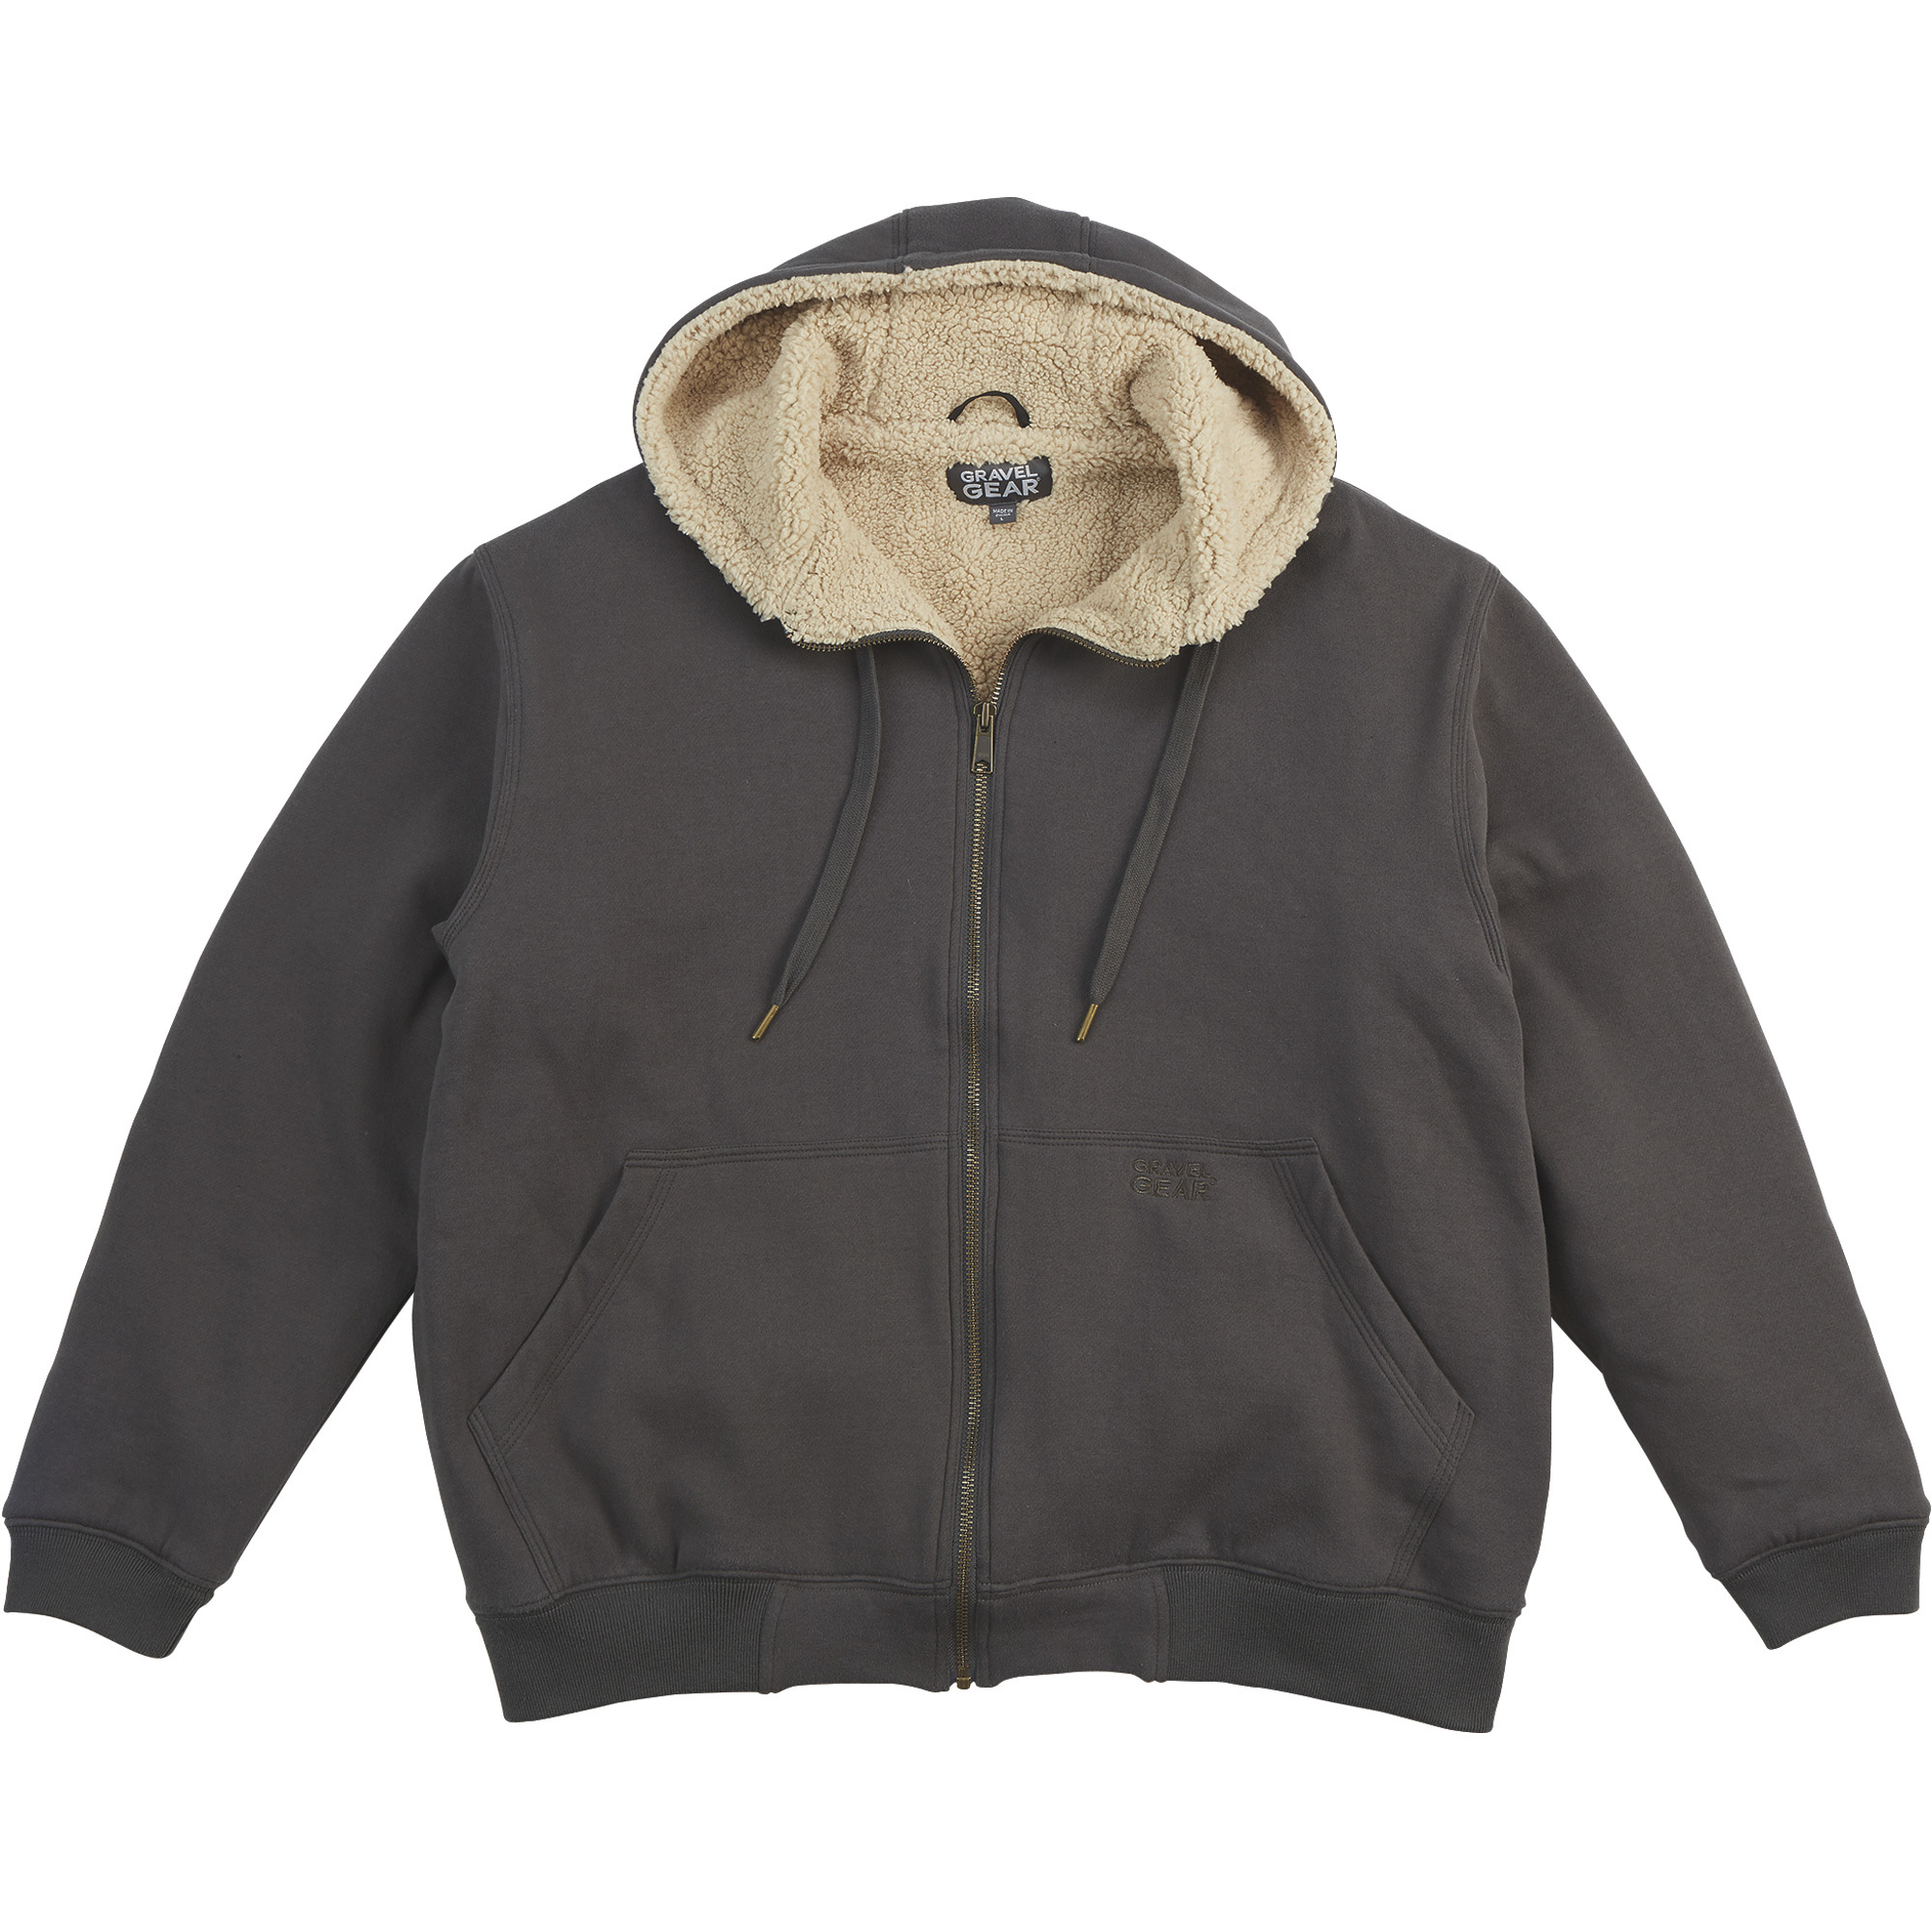 Gravel Gear Men's Sherpa-Lined Full-Zip Hooded Sweatshirt â Charcoal, Medium